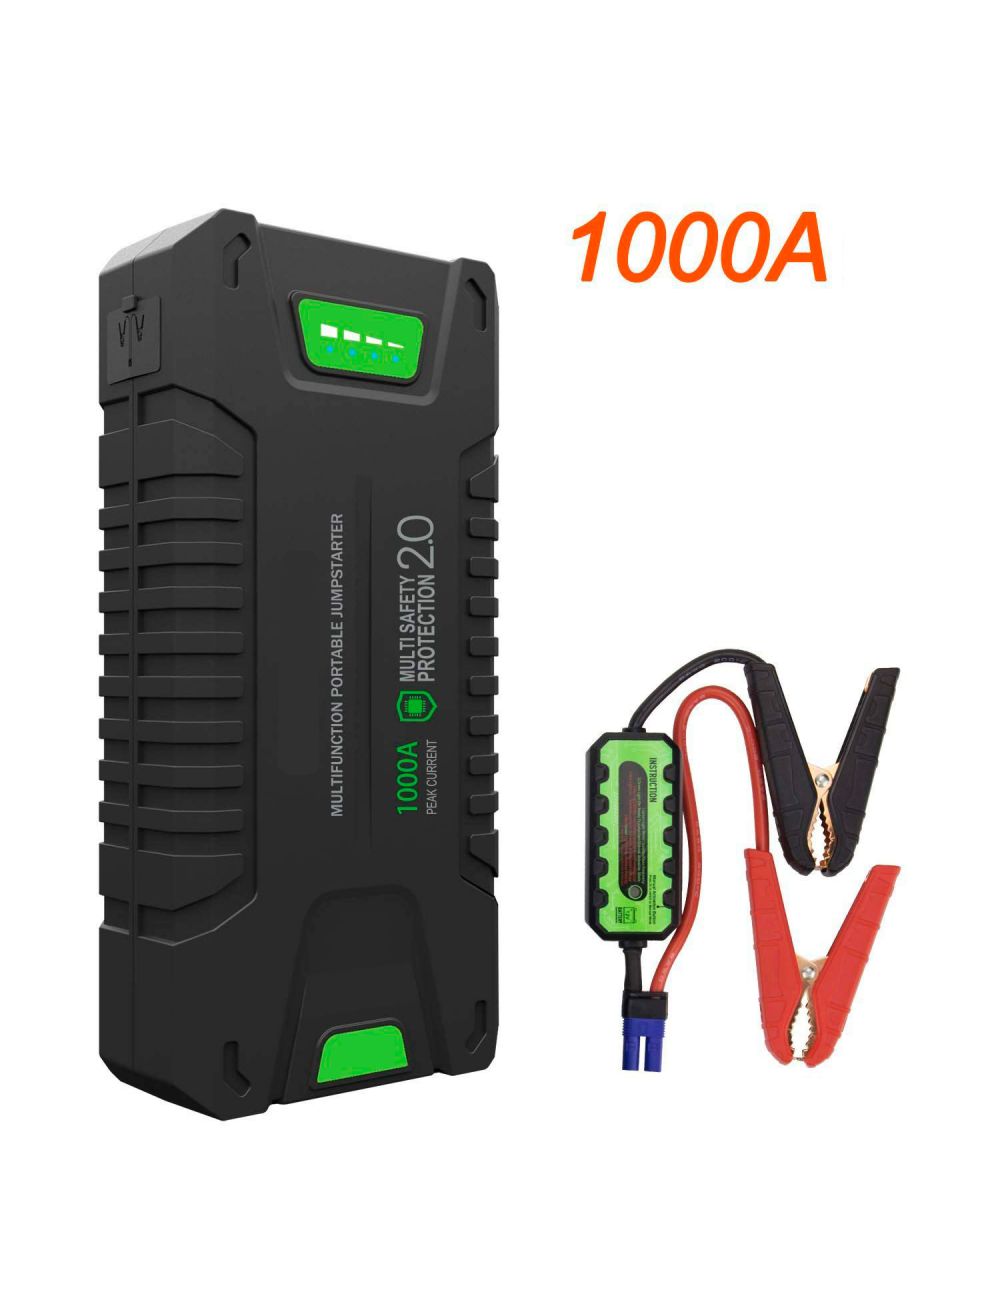 Booster de lítio de 20000mAh 1000A com 1 porta USB-A, 1 porta USB-C, 2 tomadas DC 12-16V (180W max.) e lanterna - 1